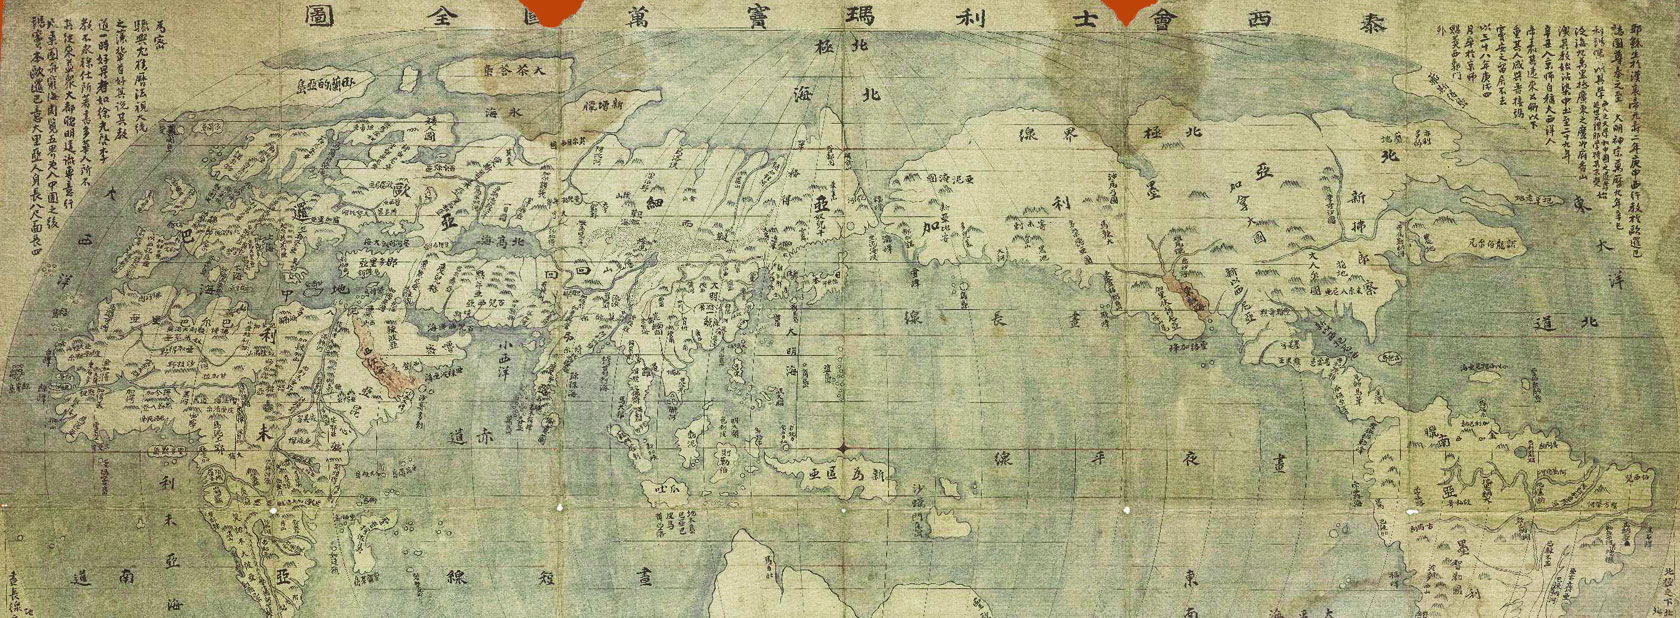 만국전도 - 하백원이 그린 「만국 전도」는 우리나라에 전해지는 지도 중에서 알레니(Giulio Aleni)[1582~1649]본이라는 톡특한 저본(底本)을 토대로 제작하였다.